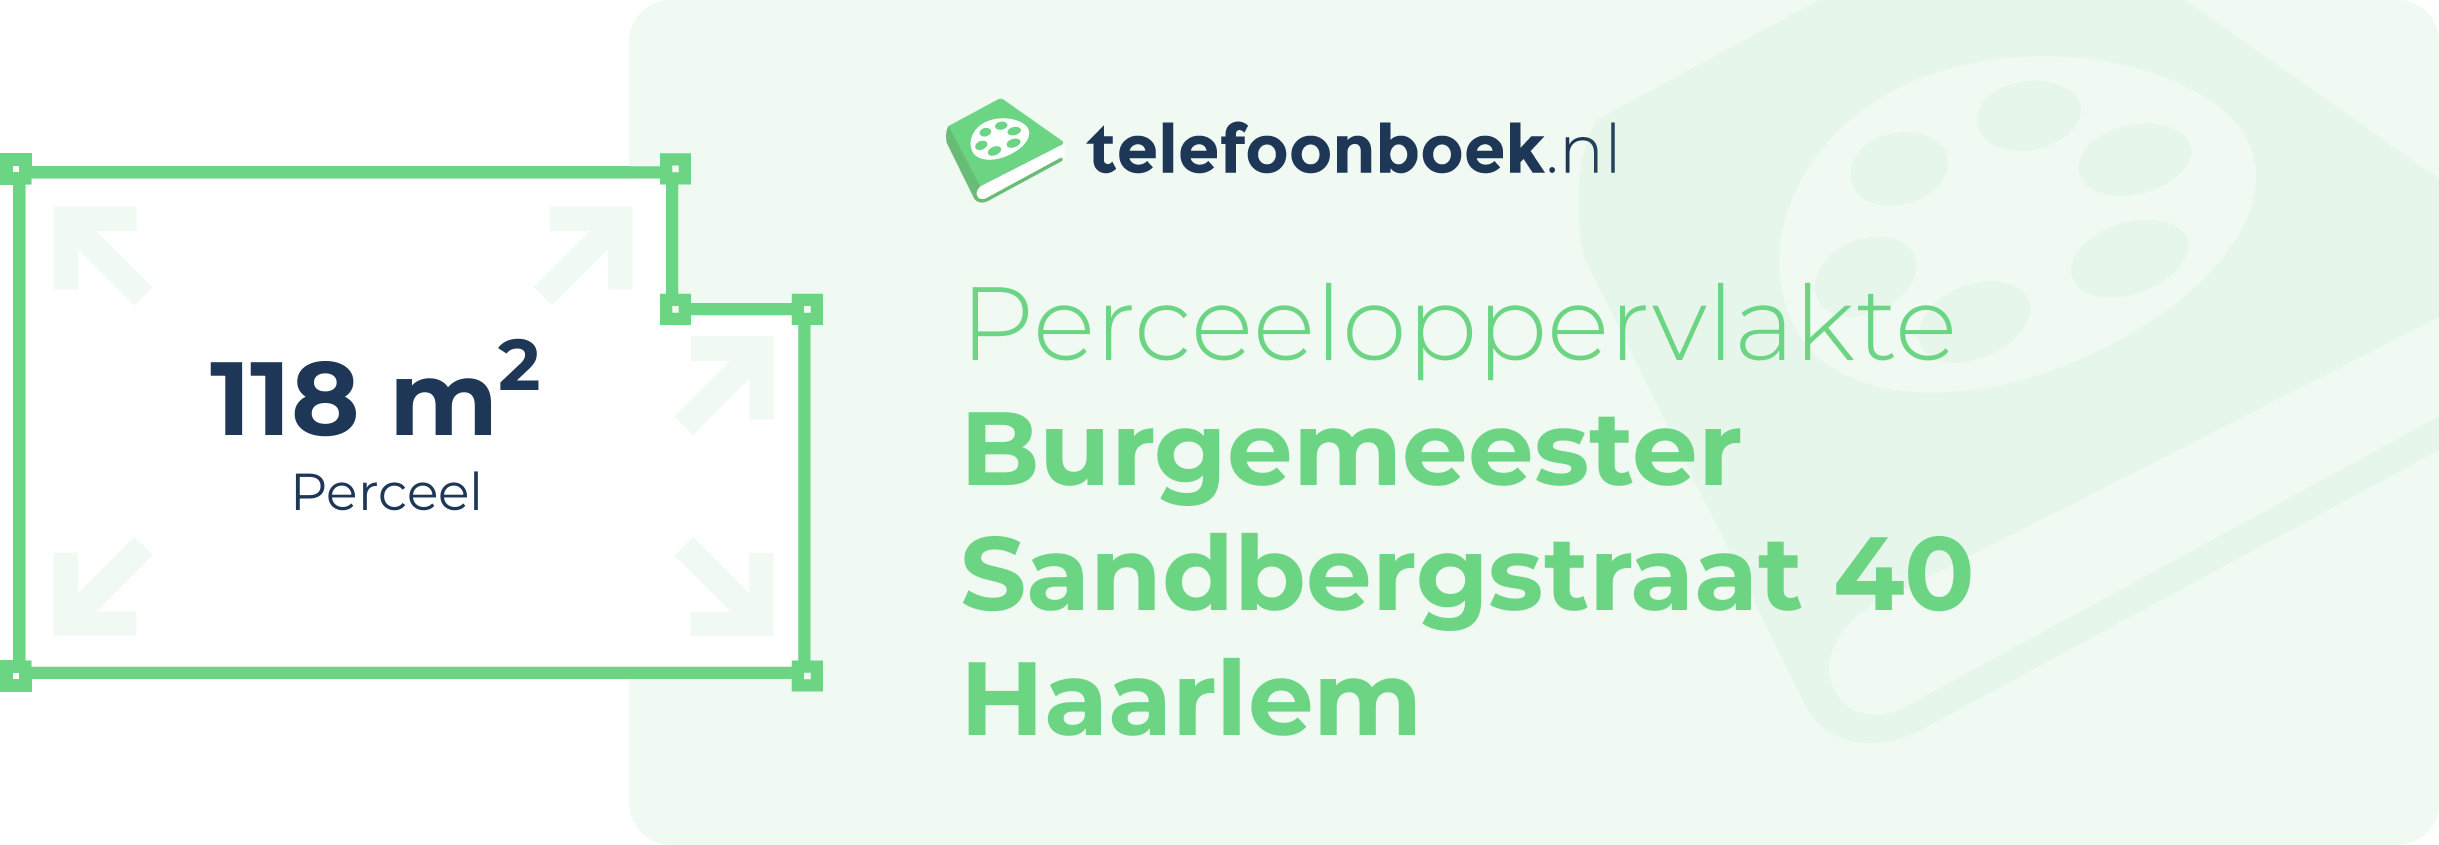 Perceeloppervlakte Burgemeester Sandbergstraat 40 Haarlem